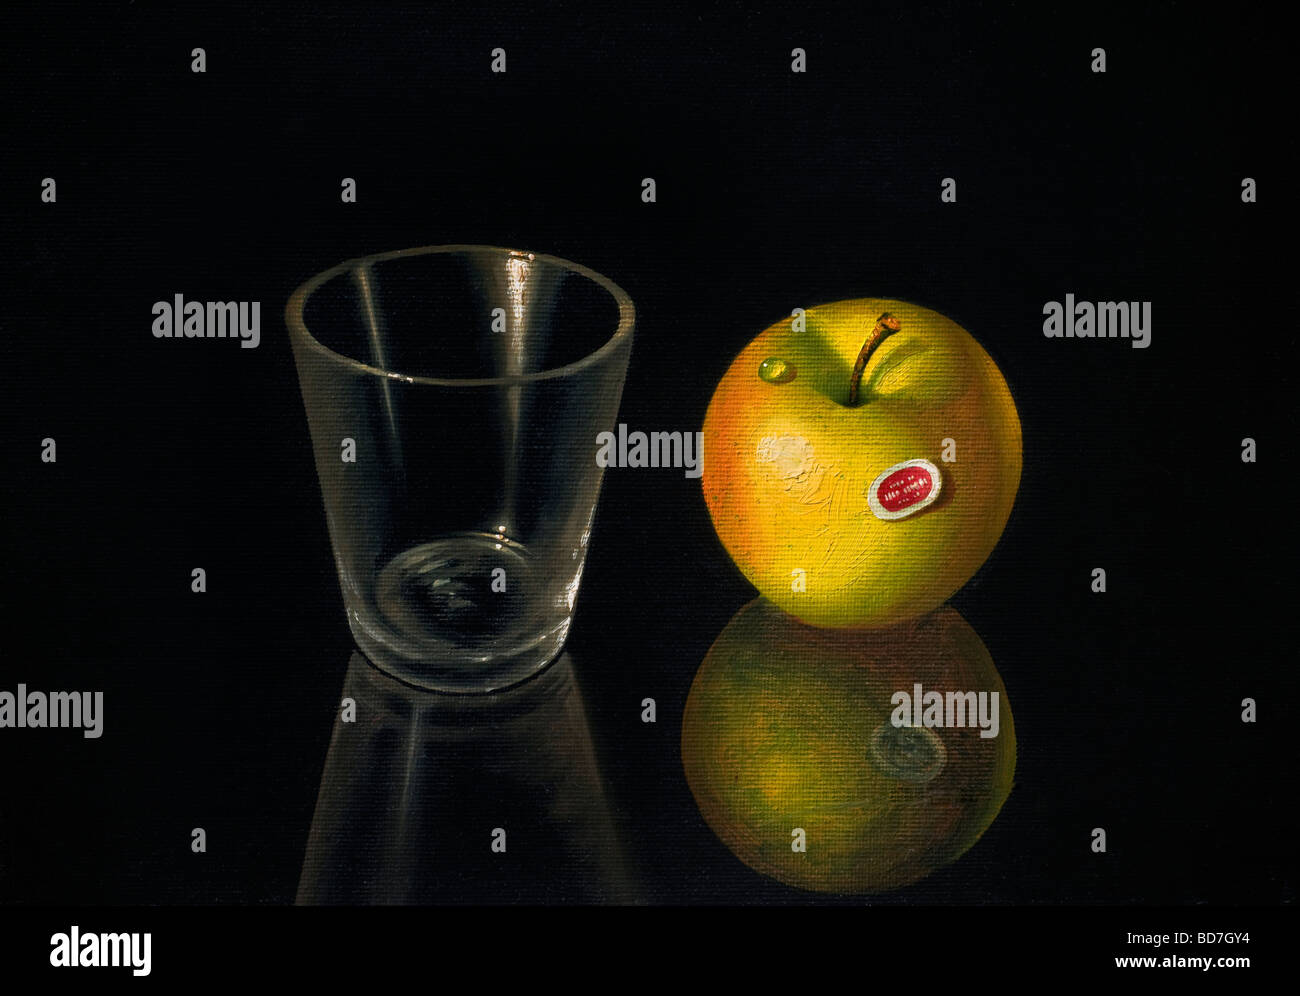 PINTURA AL ÓLEO APPLE ARTE LIENZO REALISMO simple realista vida de una manzana y gota de agua con un vaso de agua sobre un fondo negro reflectante Foto de stock